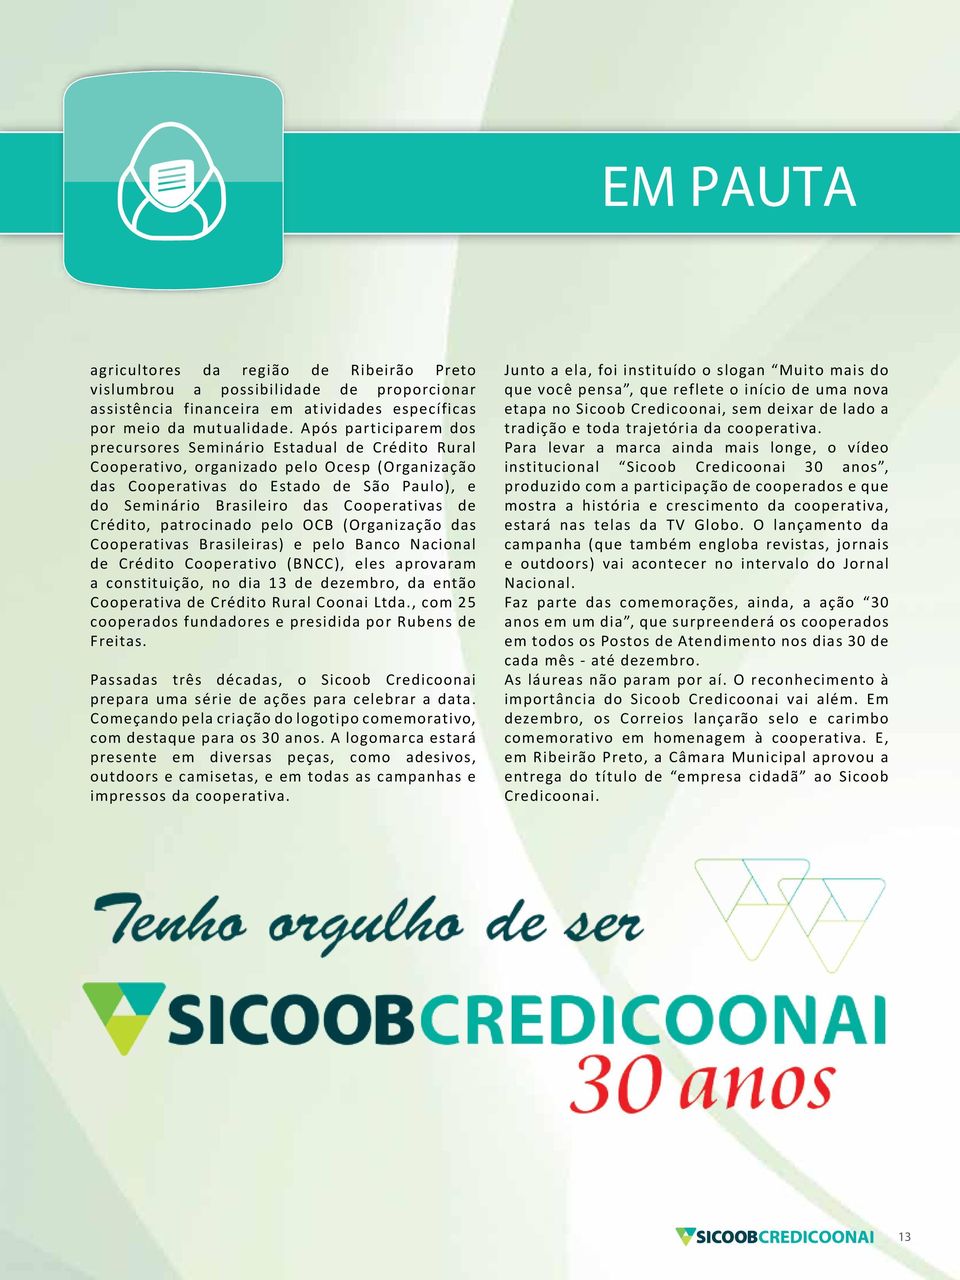 Cooperativas de Crédito, patrocinado pelo OCB (Organização das Cooperativas Brasileiras) e pelo Banco Nacional de Crédito Cooperativo (BNCC), eles aprovaram a constituição, no dia 13 de dezembro, da